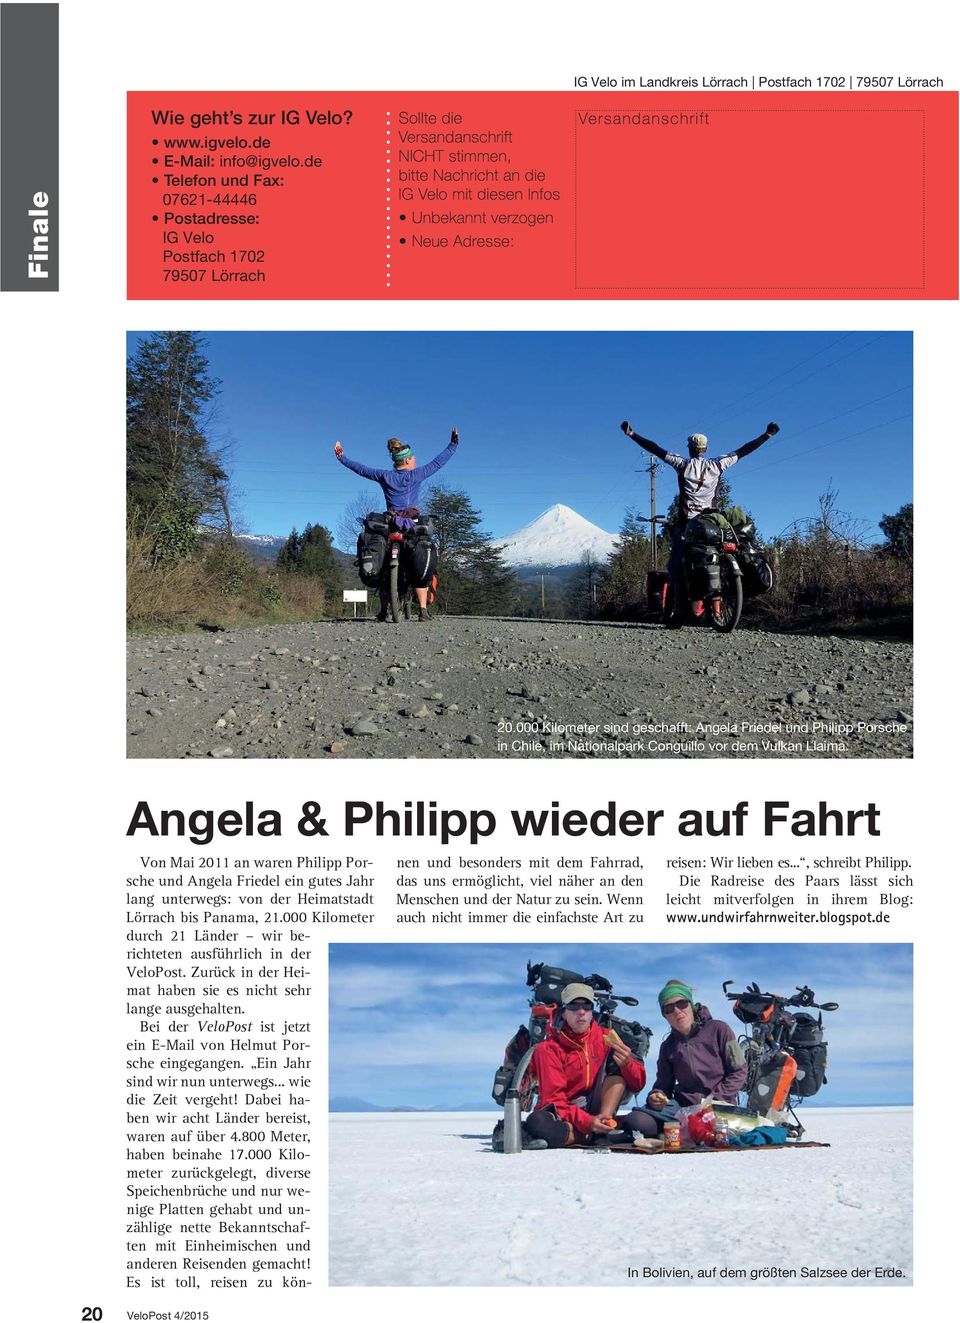 Adresse: Versandanschrift 20.000 Kilometer sind geschafft: Angela Friedel und Philipp Porsche in Chile, im Nationalpark Conguillo vor dem Vulkan Llaima.